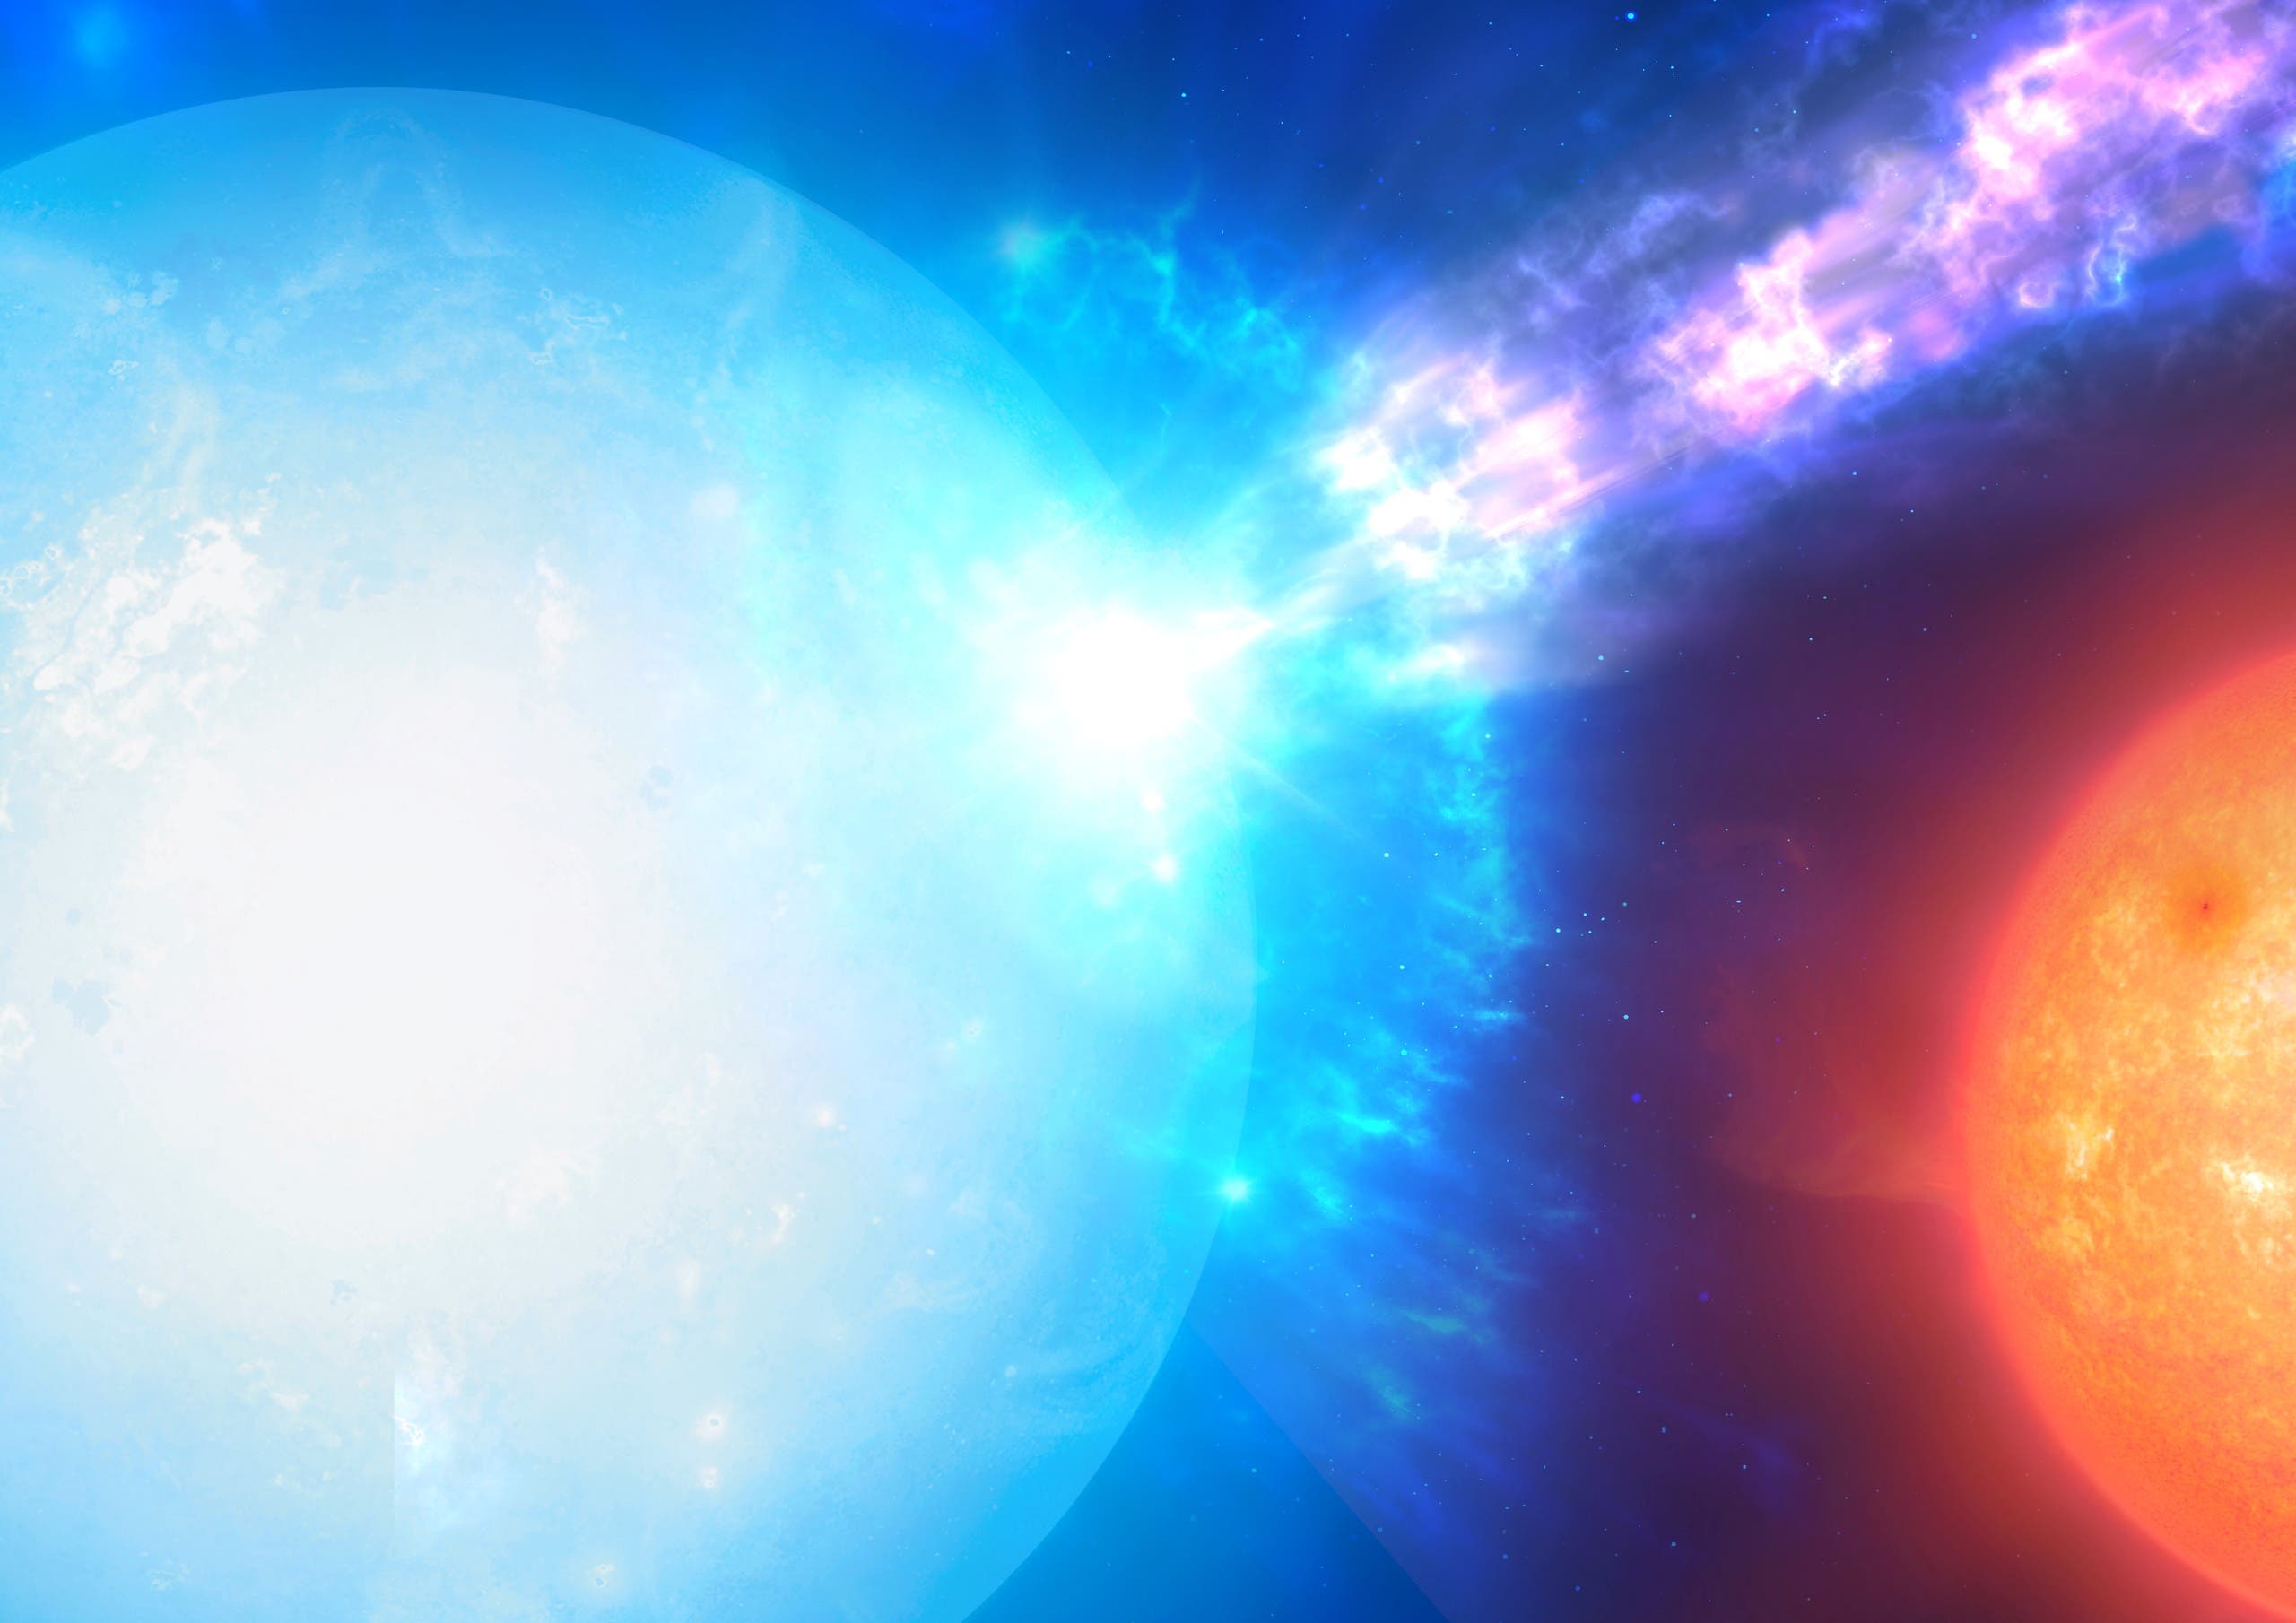 رسم تخيلي لنجم من نوع "القزم الأبيض"حيث يمكن أن يقع انفجار من نوع ميكرونوفا